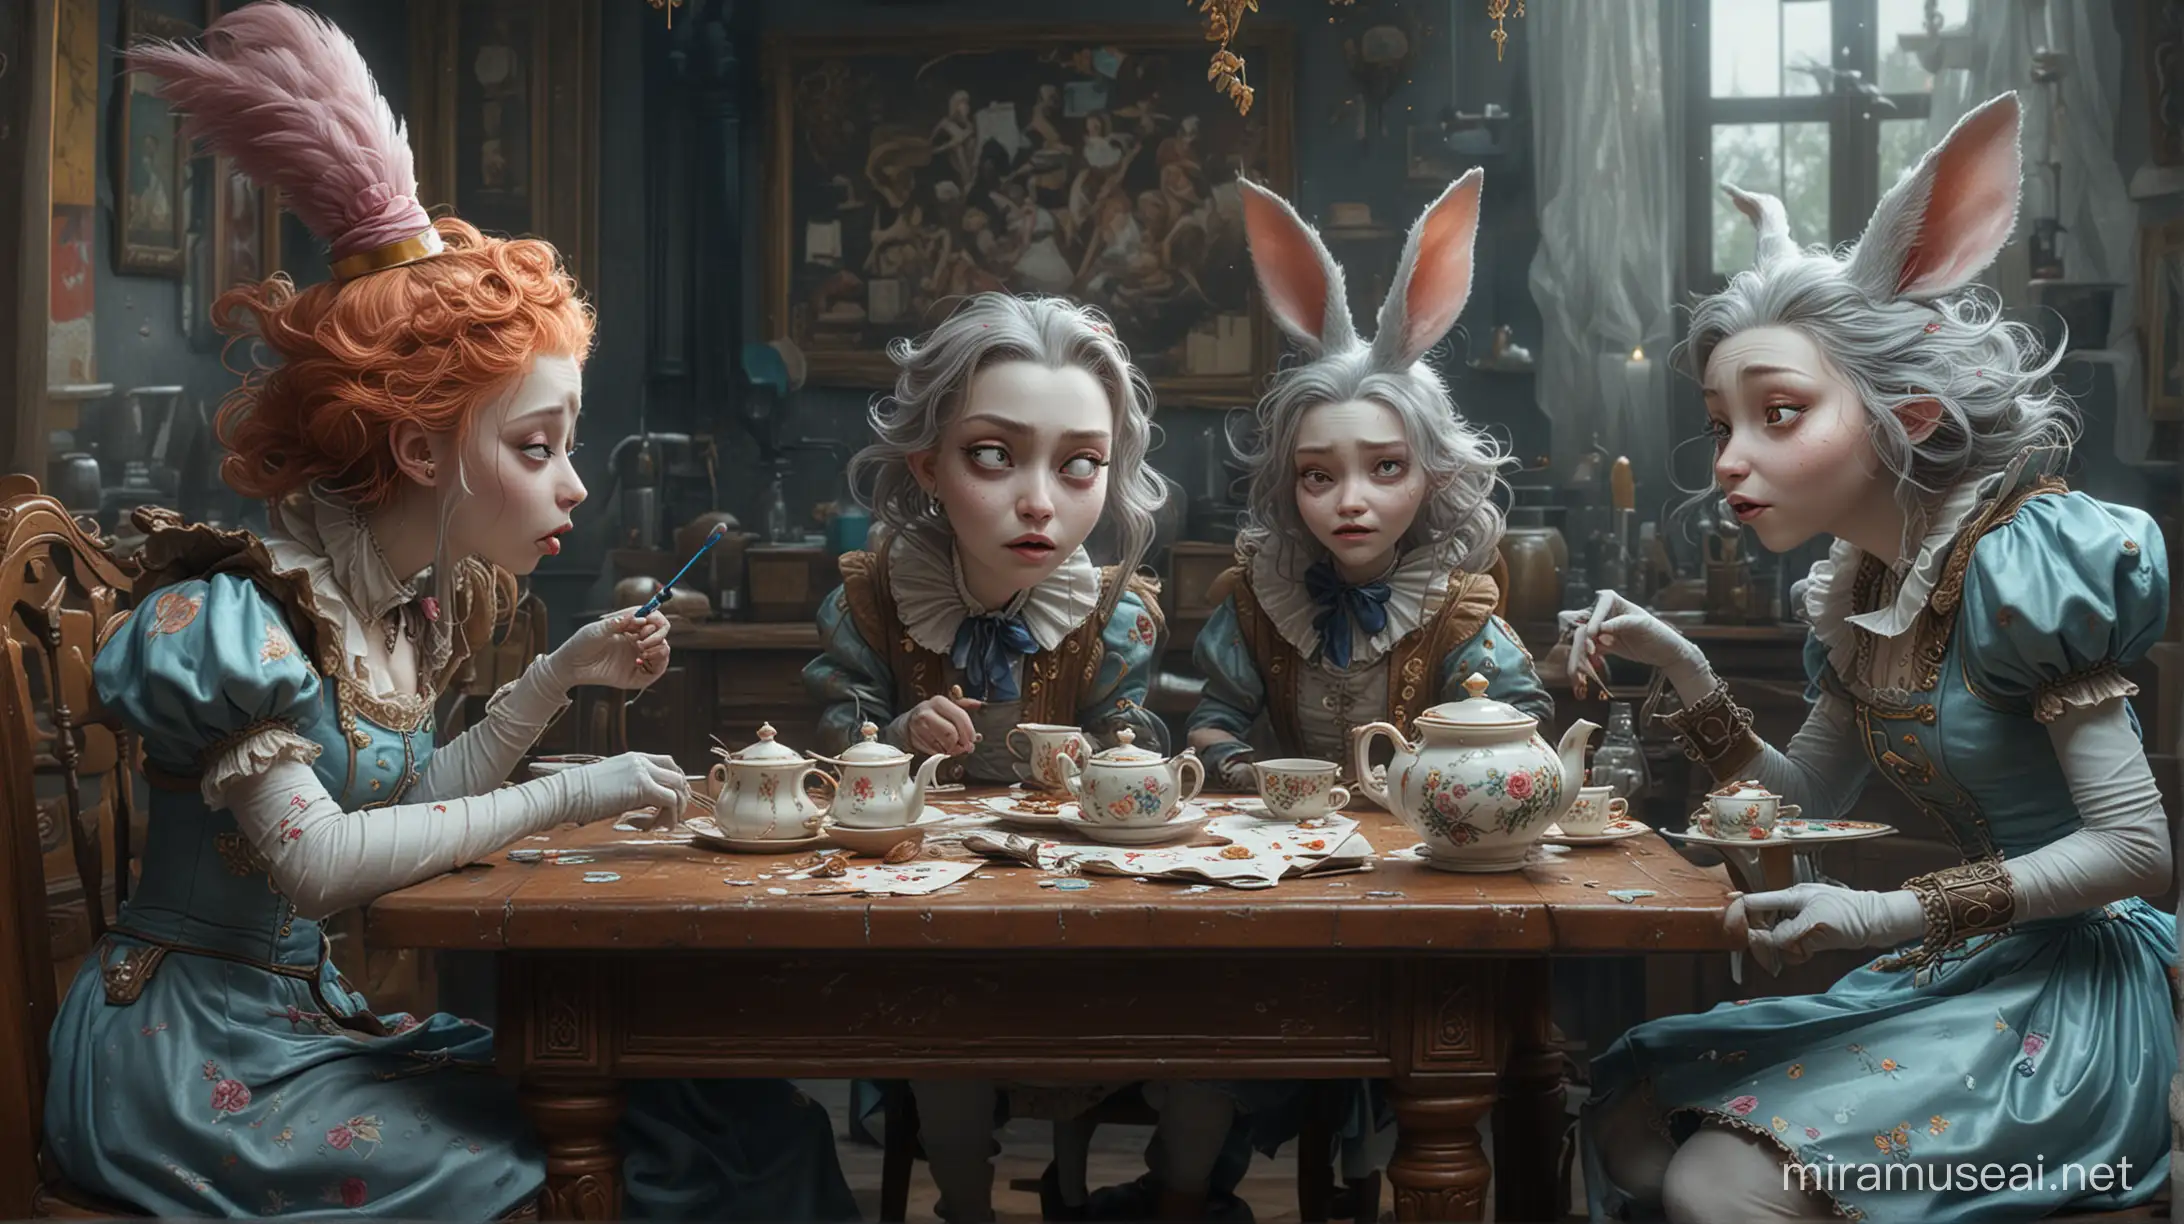 Surreal Tea Party Magical Dream Realism Bizarre Art